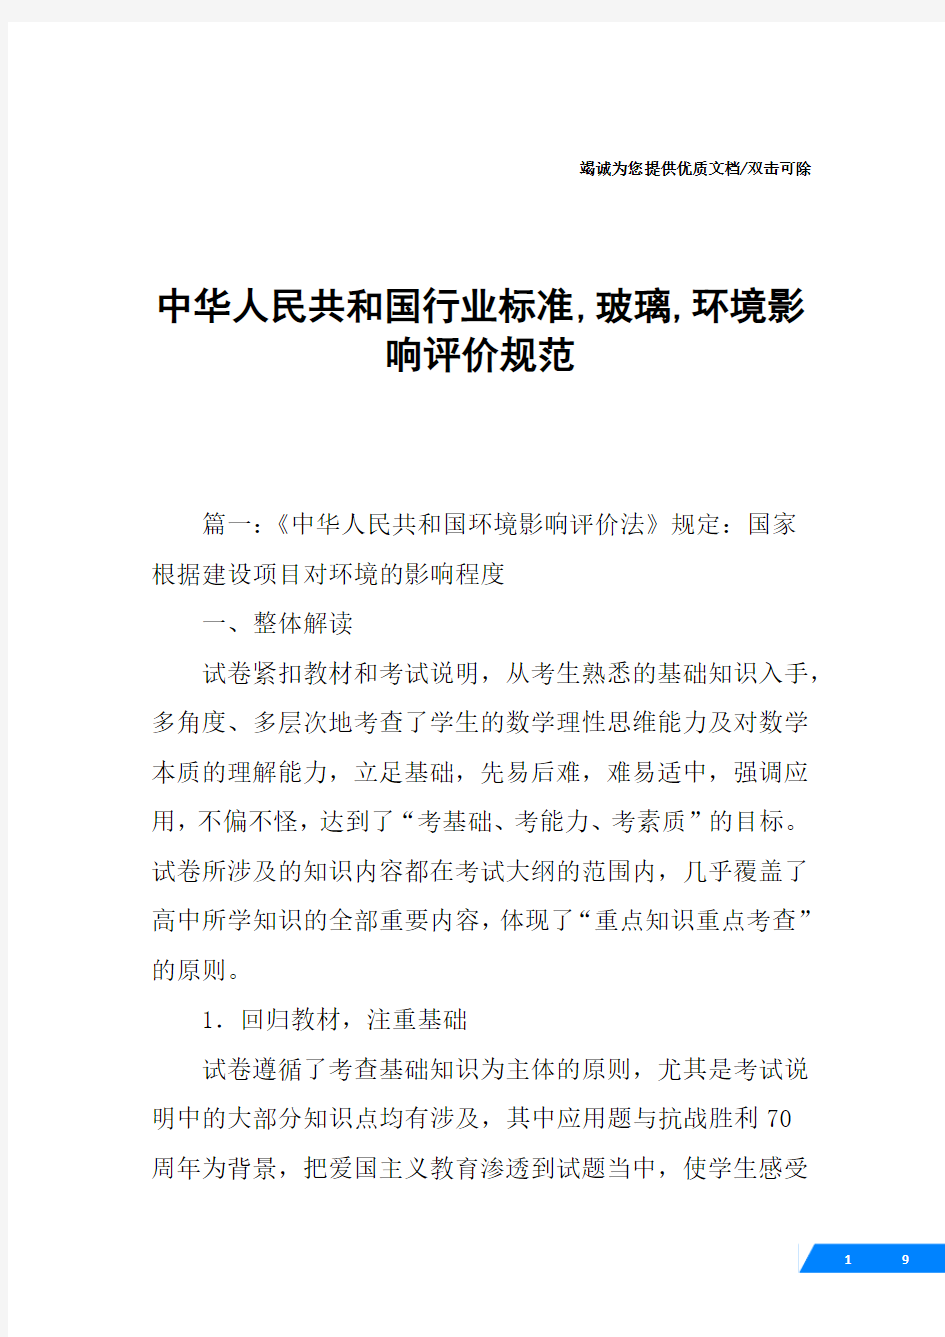 中华人民共和国行业标准,玻璃,环境影响评价规范